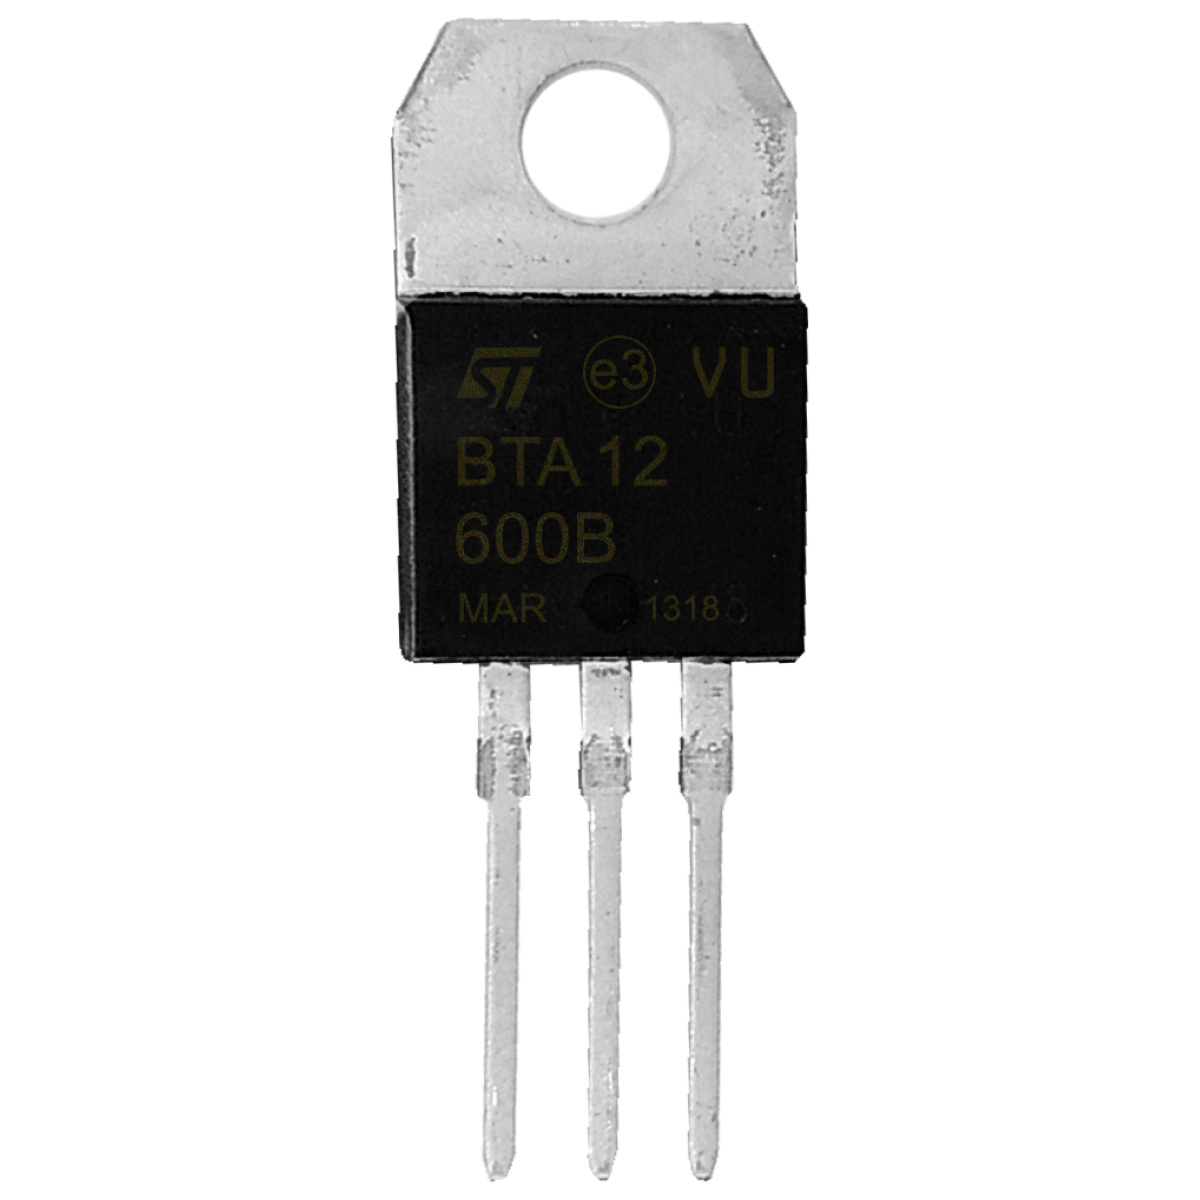 Transistor SCR BTA 12-600 B - D&D COMPONENTES